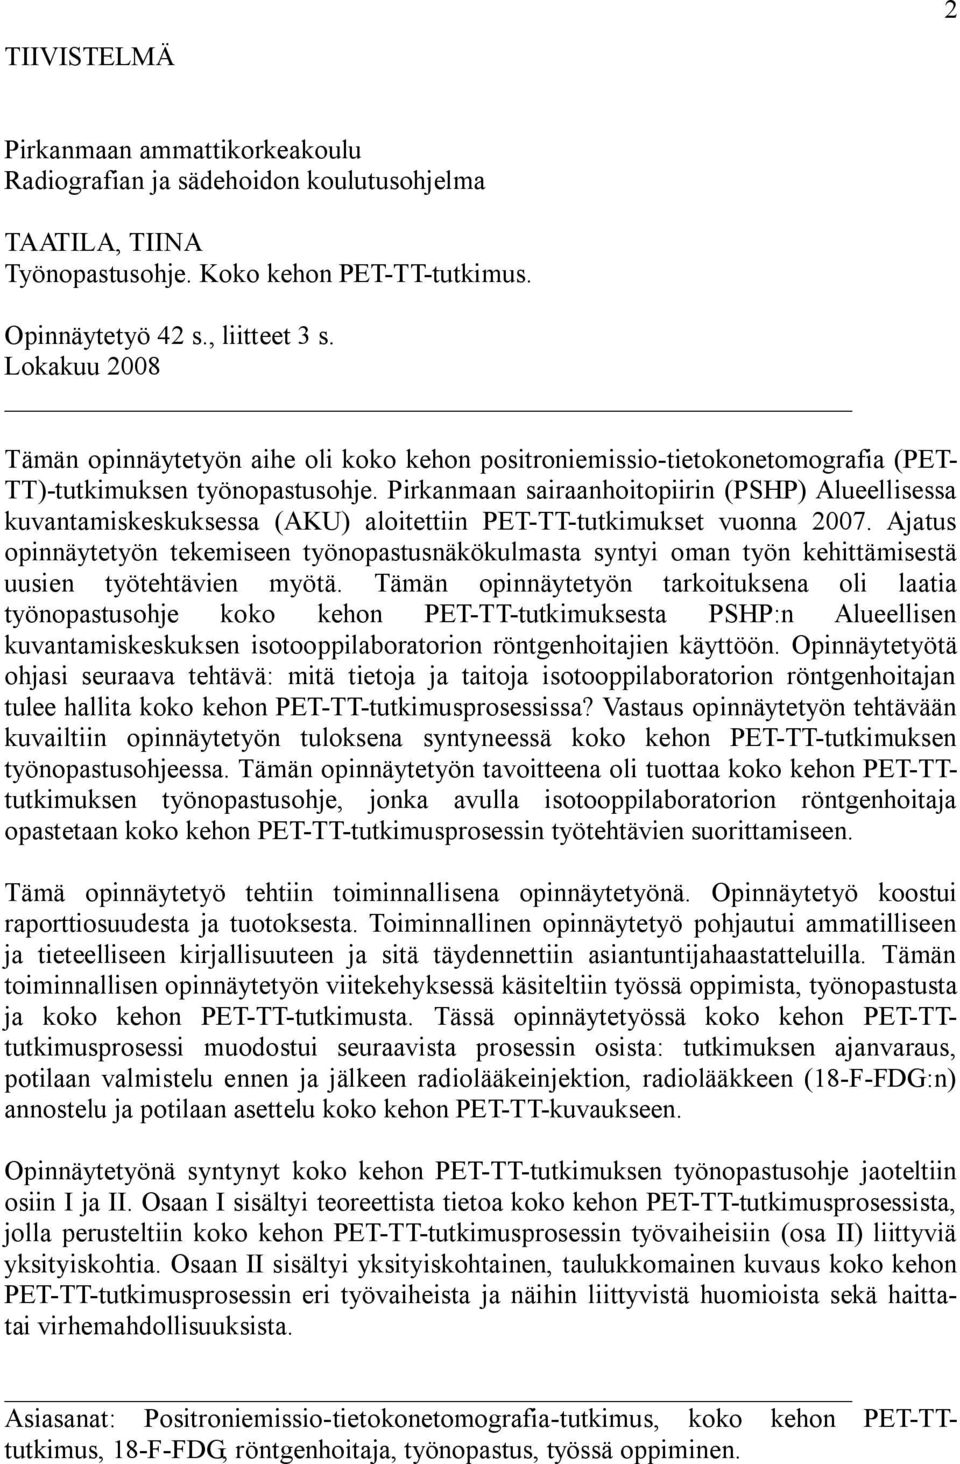 Pirkanmaan sairaanhoitopiirin (PSHP) Alueellisessa kuvantamiskeskuksessa (AKU) aloitettiin PET-TT-tutkimukset vuonna 2007.